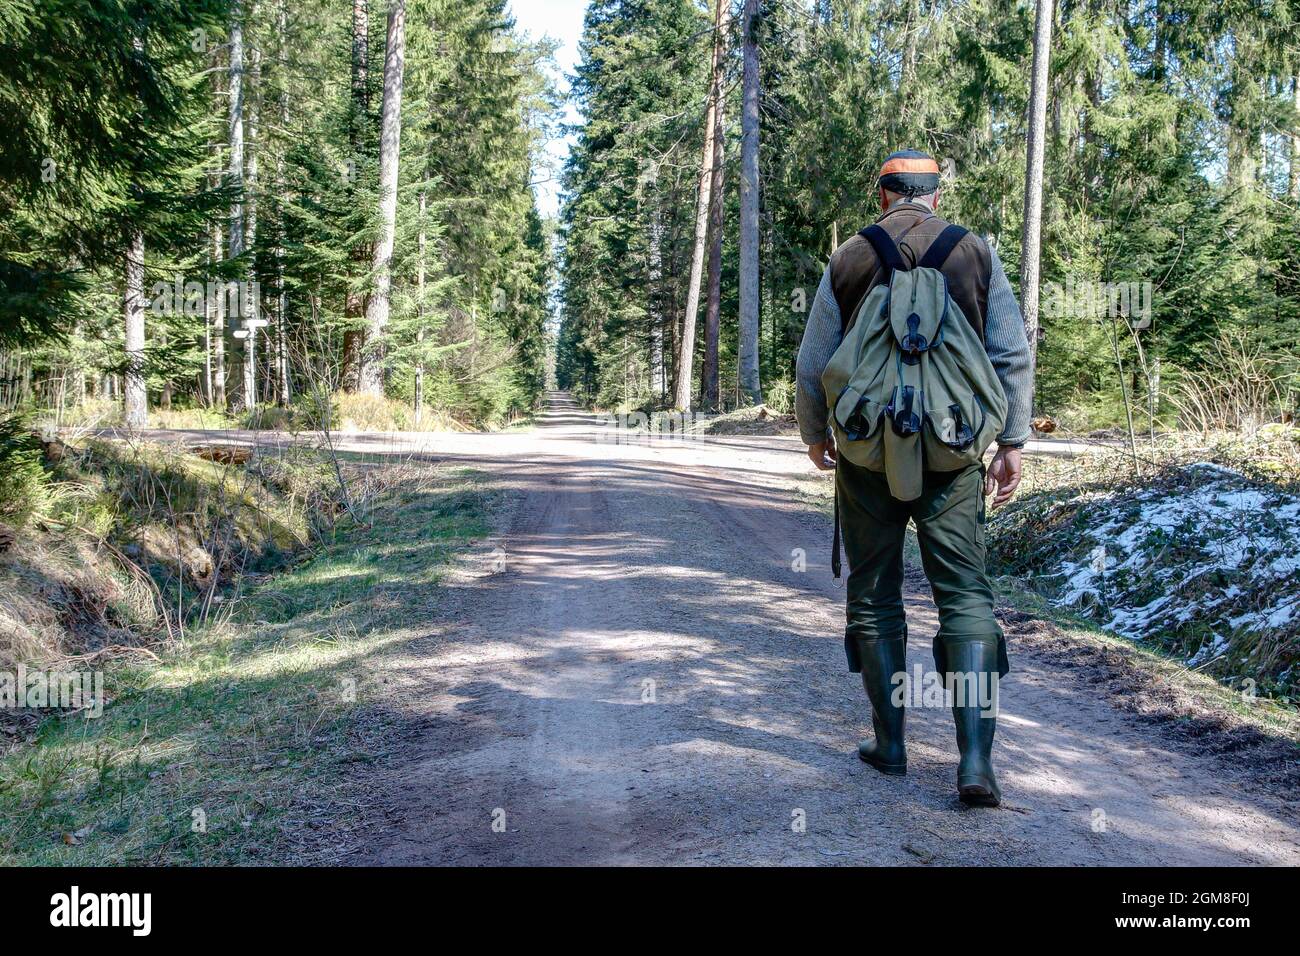 Wo Wanderer und Touristen normalerweise im Schwarzwald tummeln, ist der Jäger nun alleine unterwegs. Stockfoto